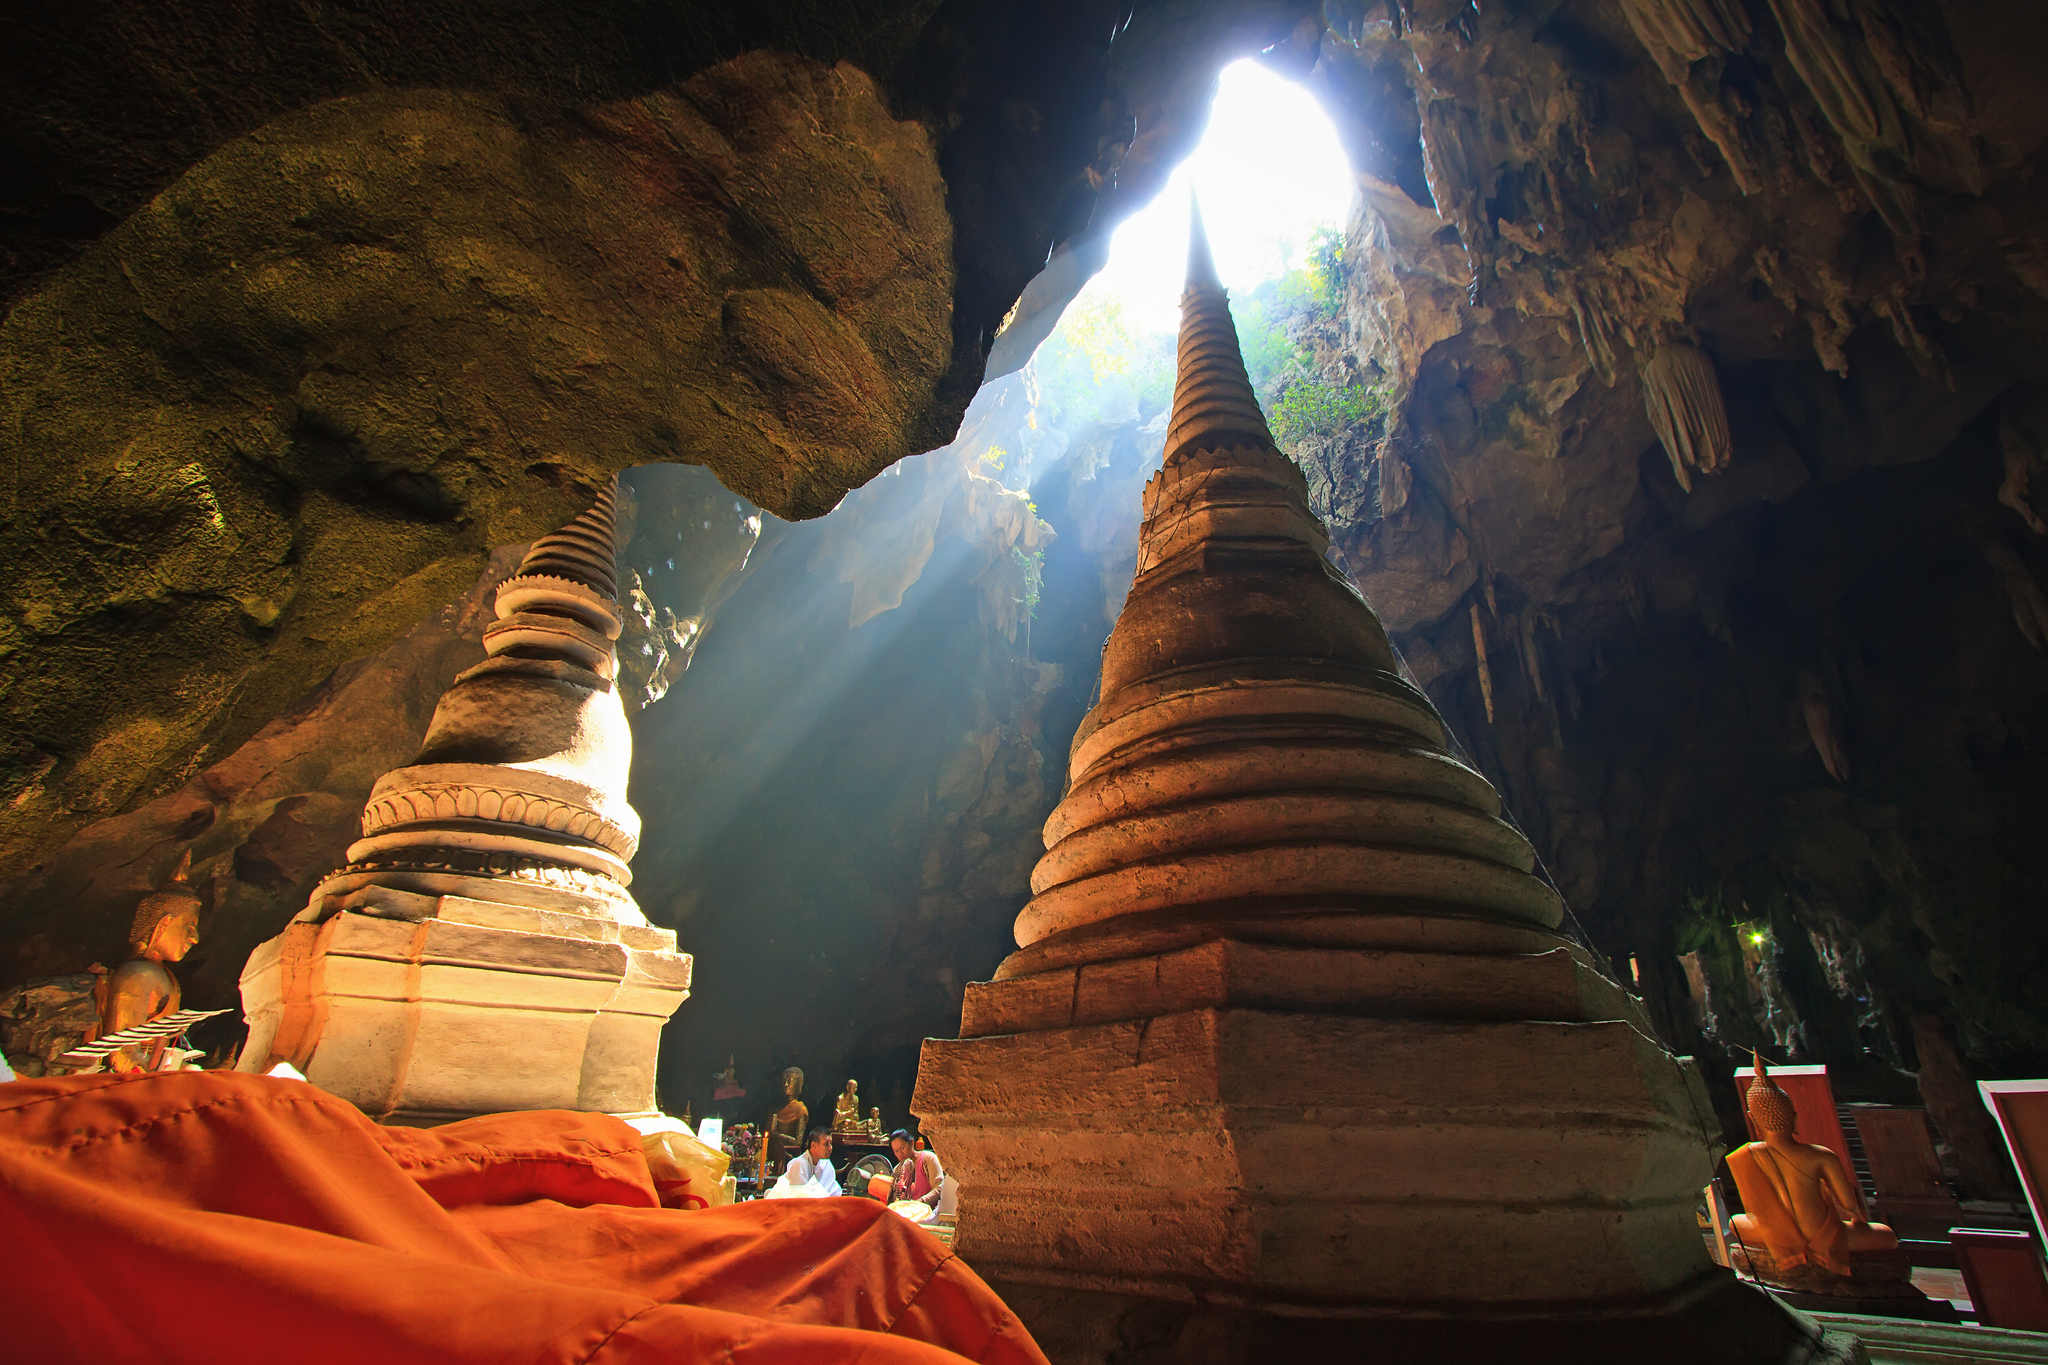 Tham.Khao.Luang.Cave.original.3833